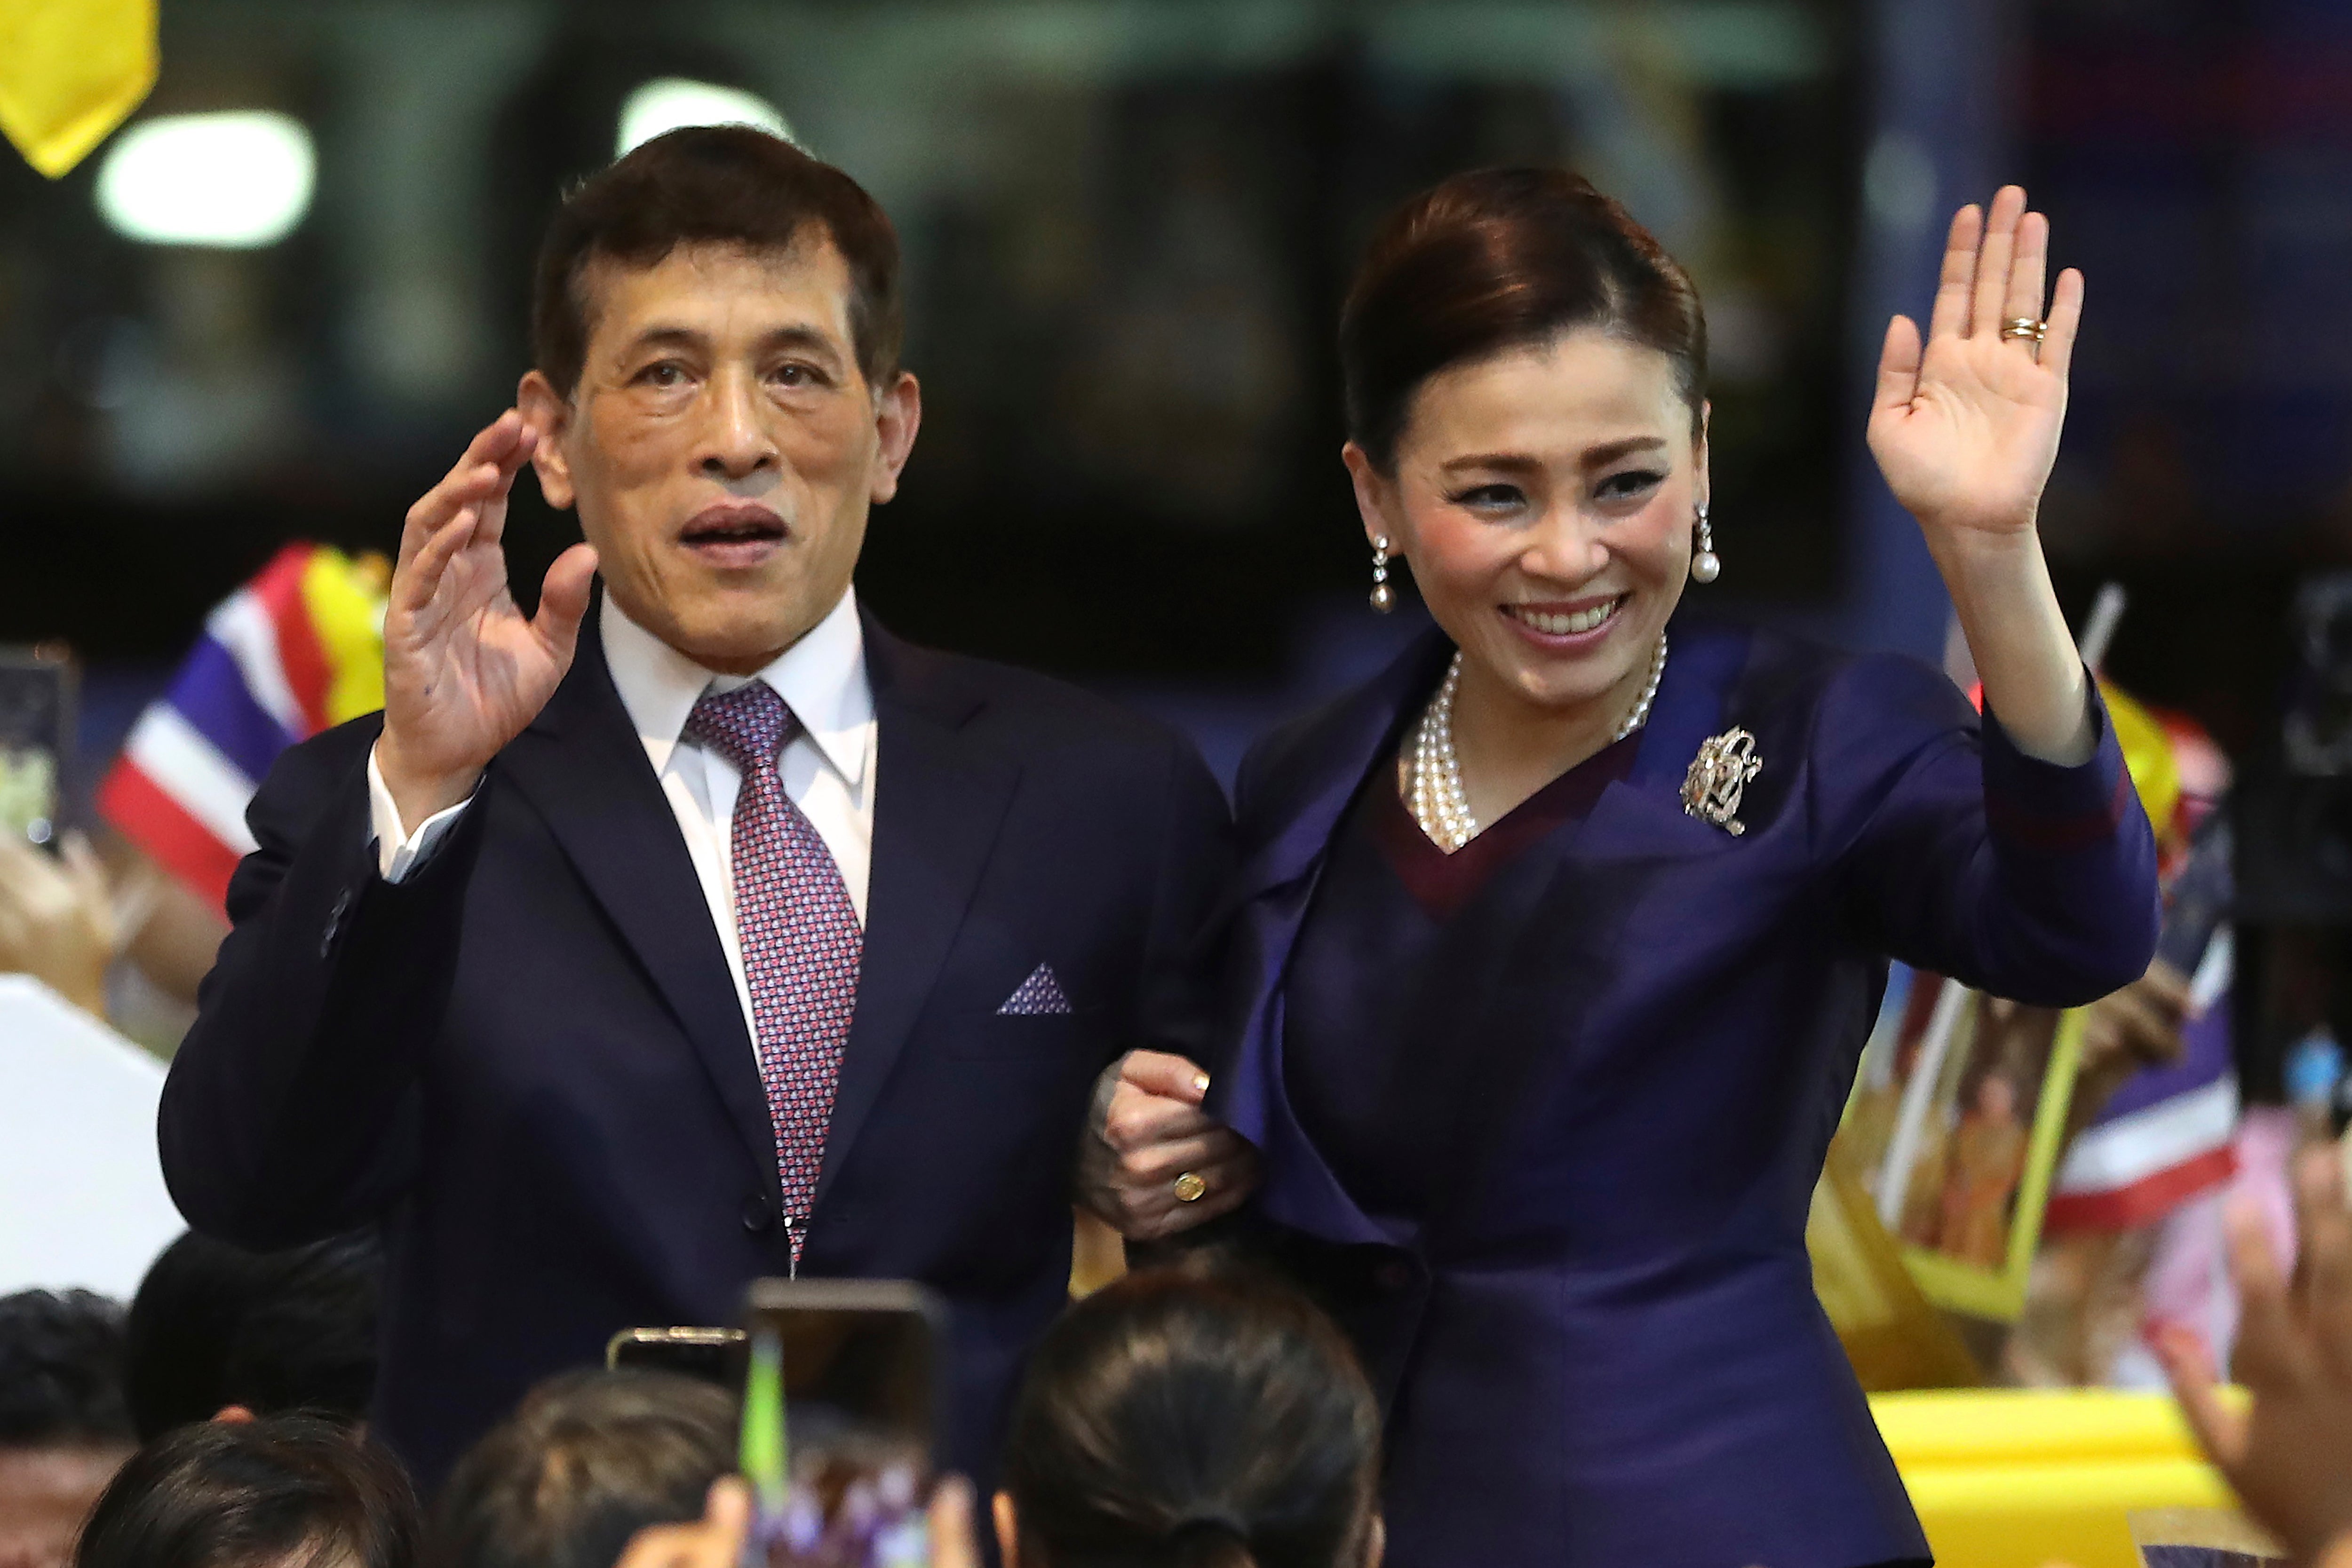 Maha Vajiralongkorn became king of Thailand in 2016